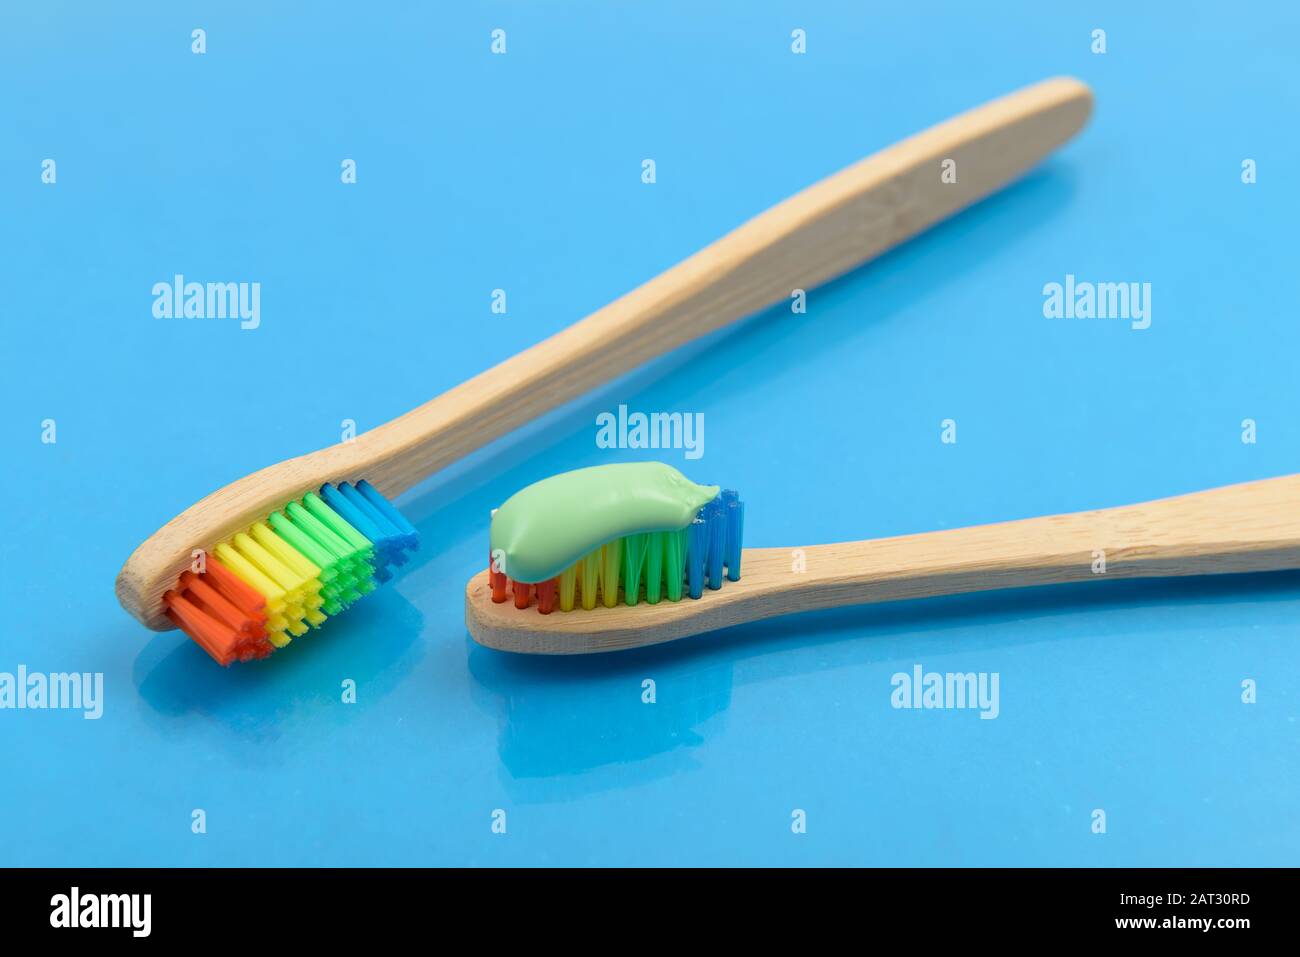 Brosse à dents en bambou avec dentifrice vert sur fond bleu avec gouttes d'eau. Concept écologique Banque D'Images